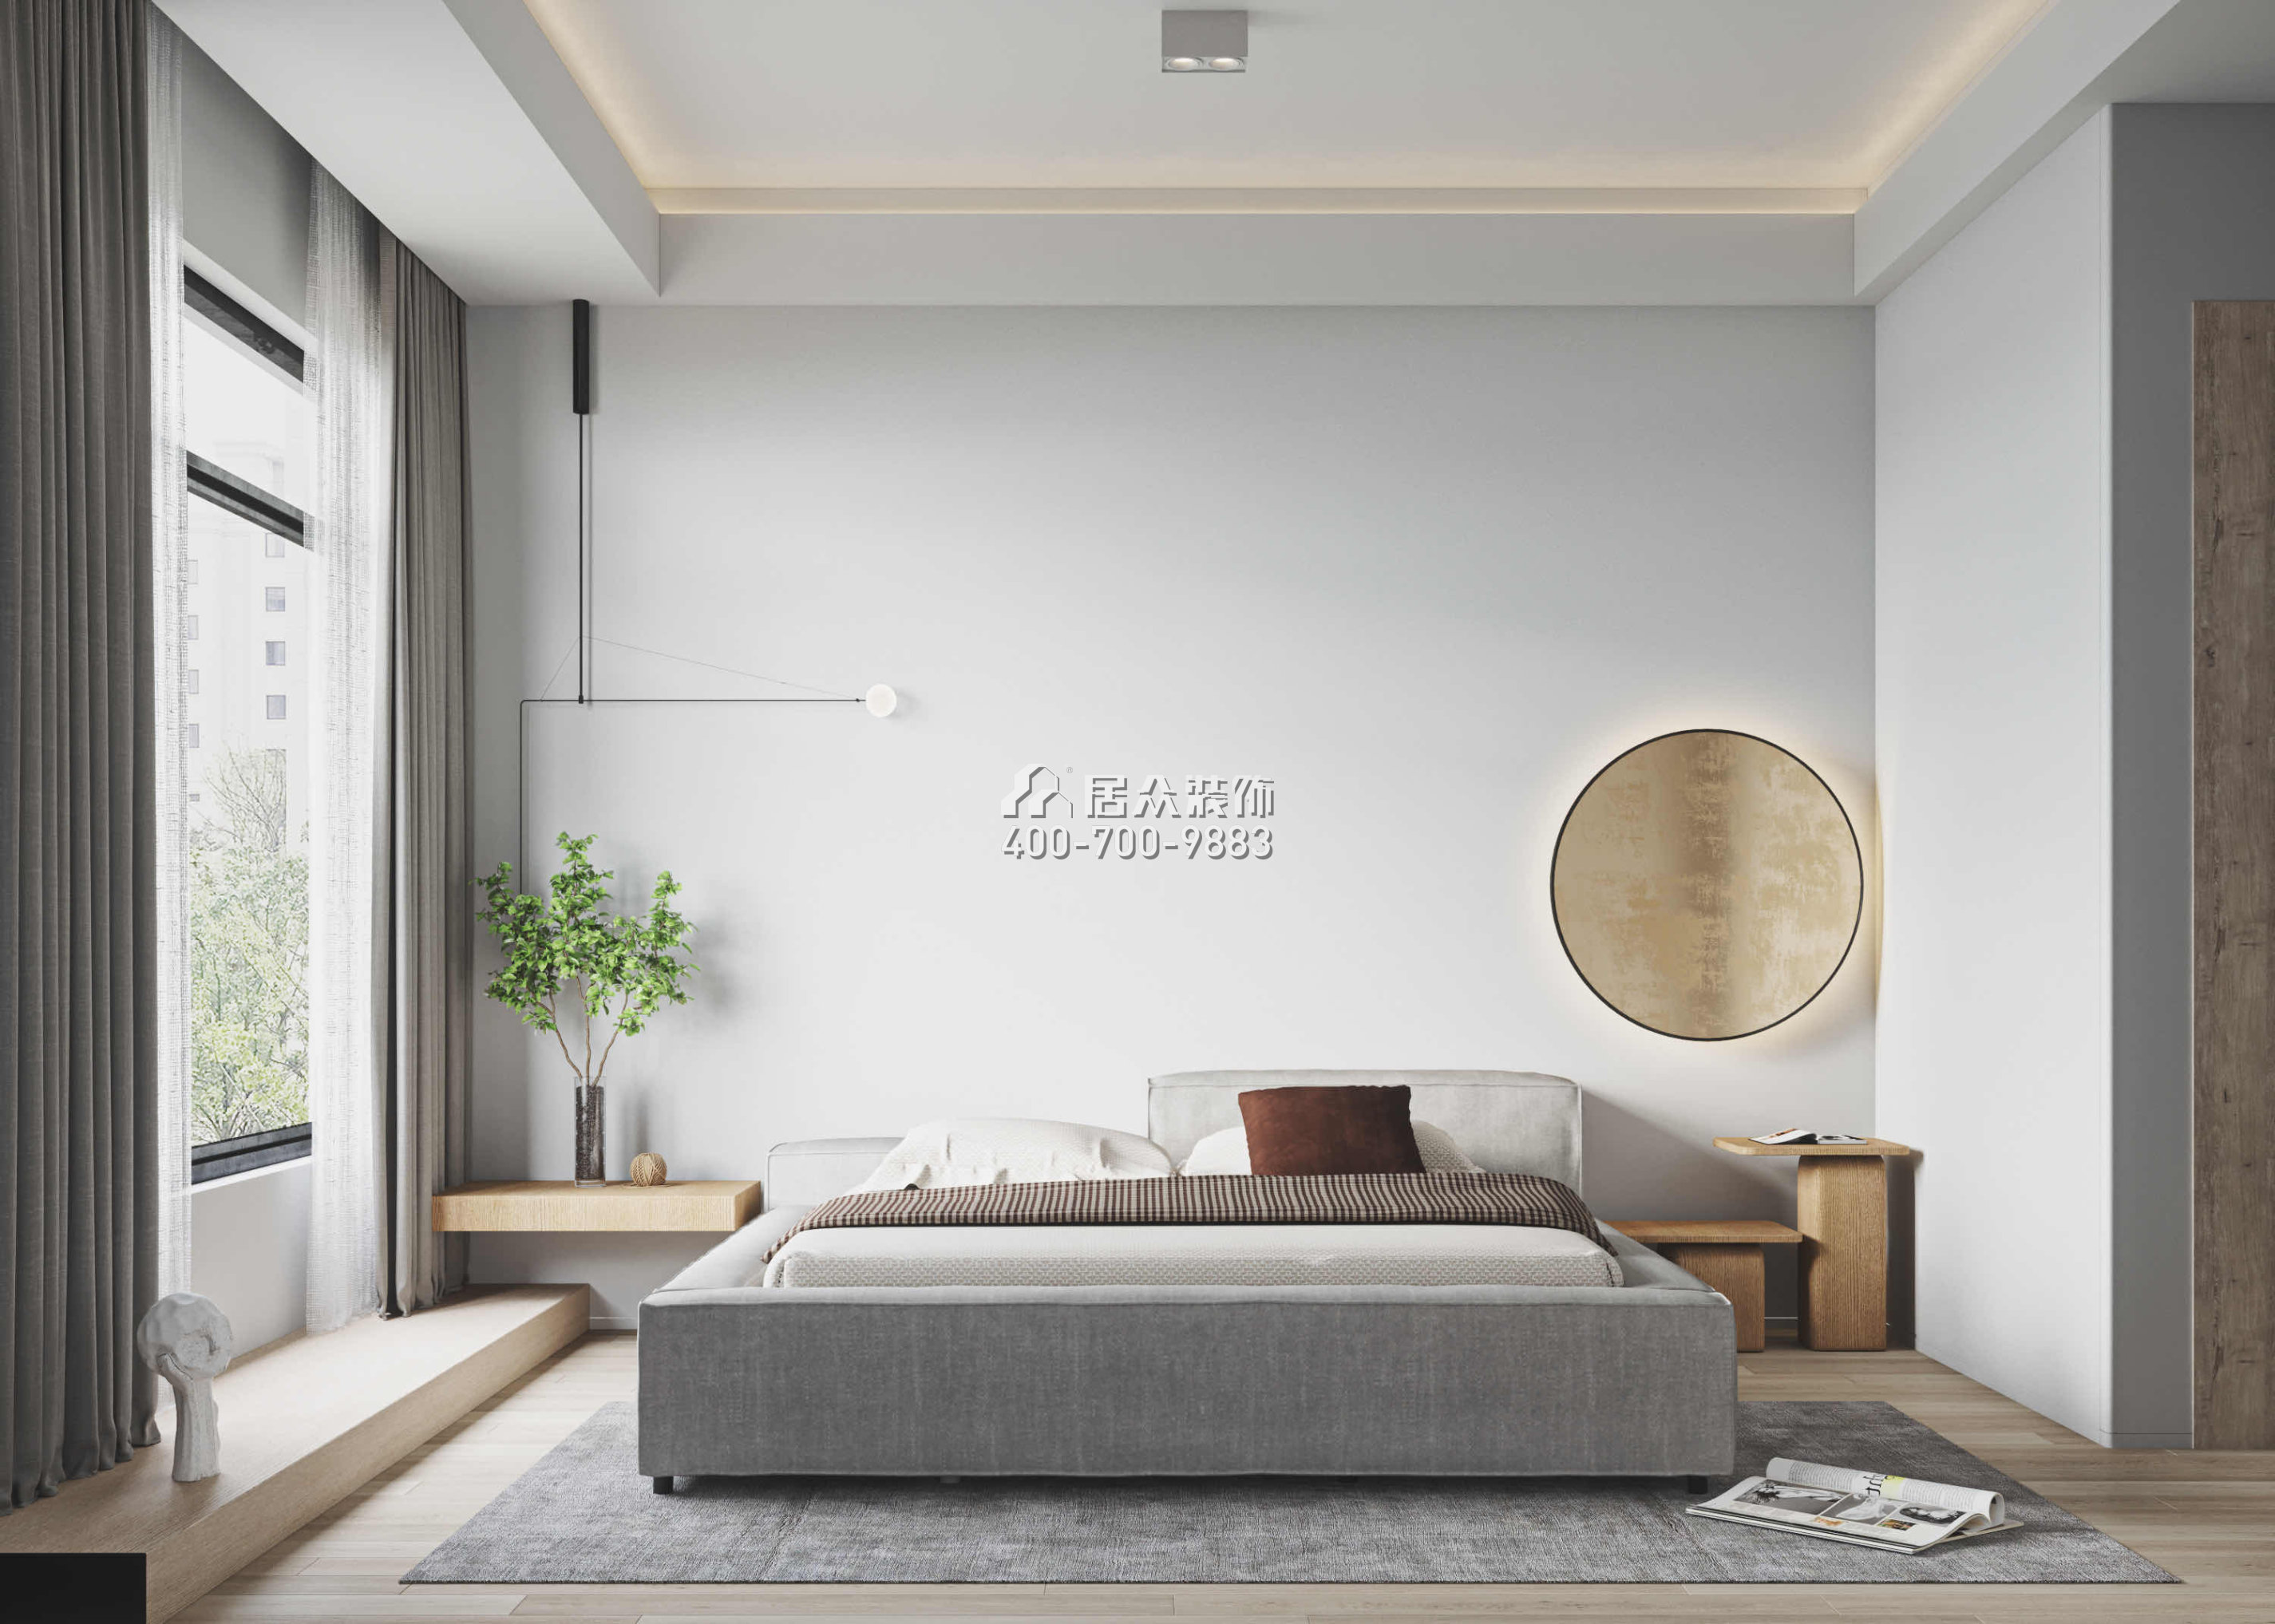 翠湖香山別苑320平方米現代簡約風格復式戶型臥室裝修效果圖